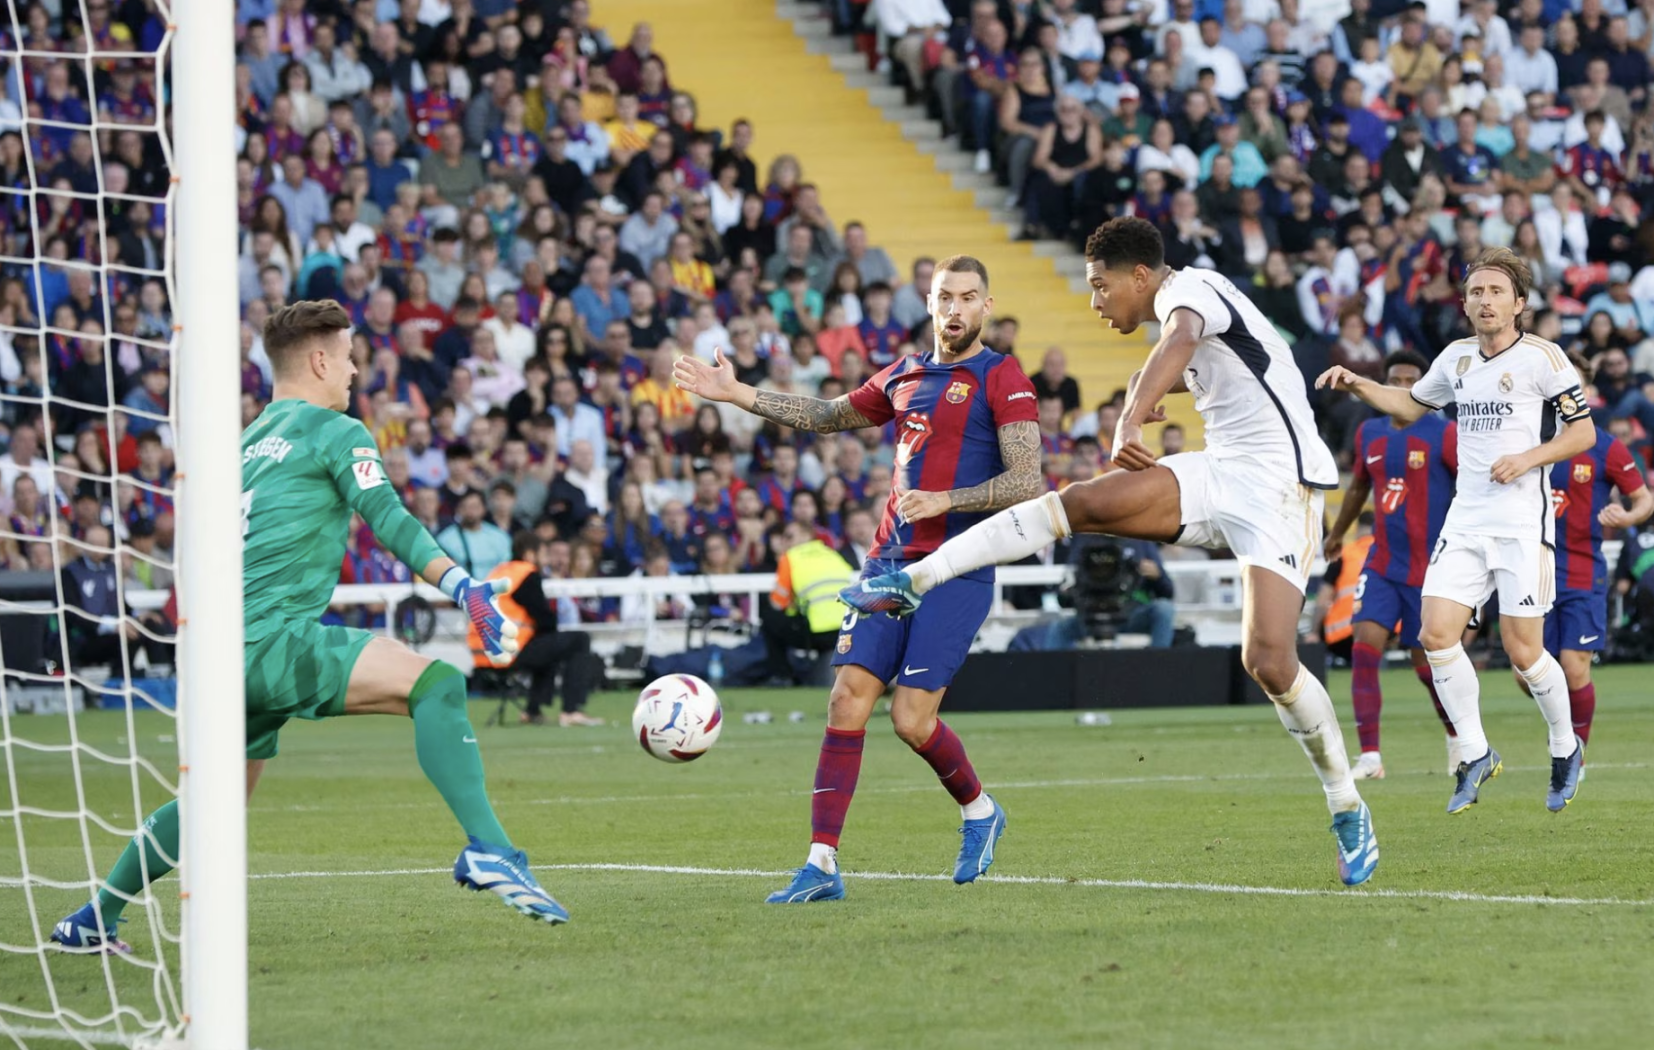 Belliingham đệm bóng ấn định chiến thắng 2-1 cho Real trước Barca. Ảnh: Reuters